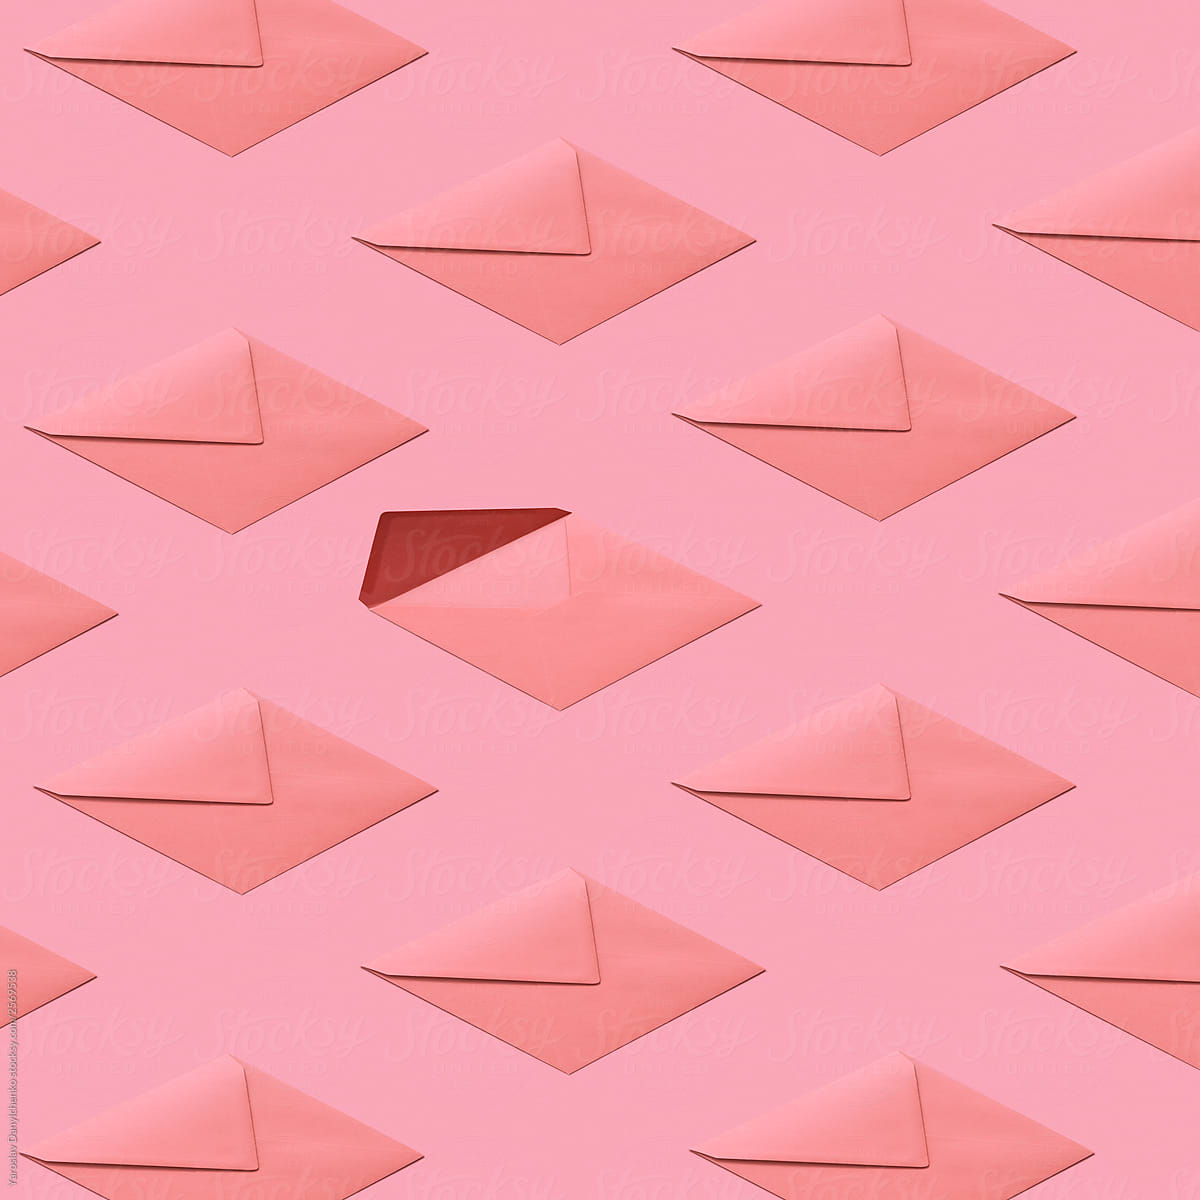 Envelopes pattern on a pastel background.